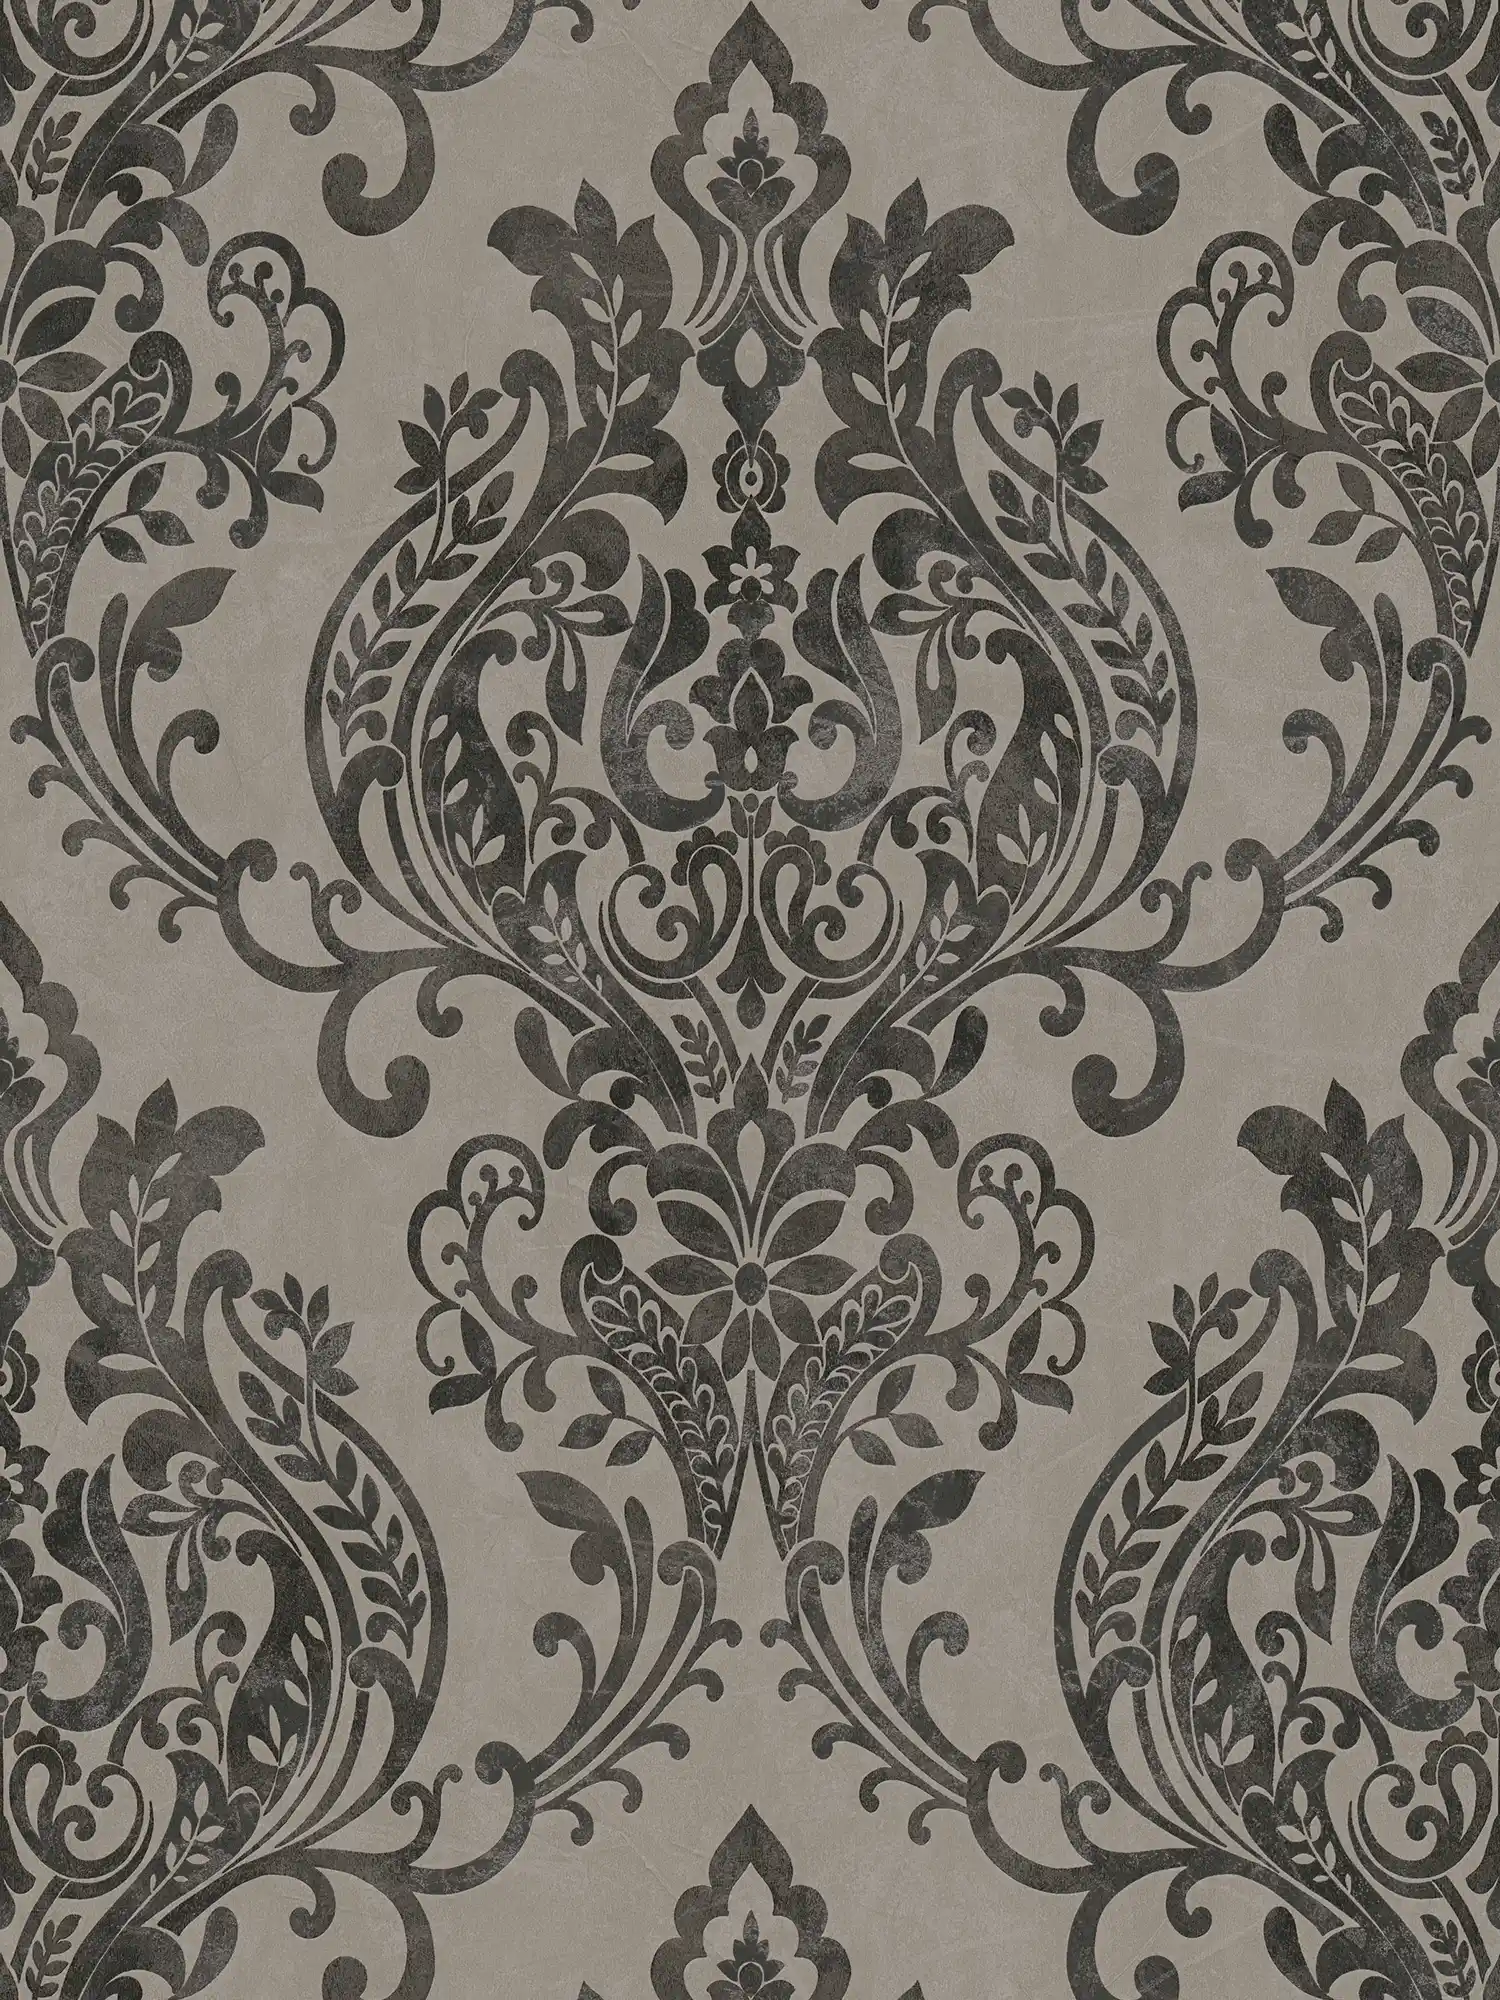 Ornament wallpaper vintage, floral - grey, black
